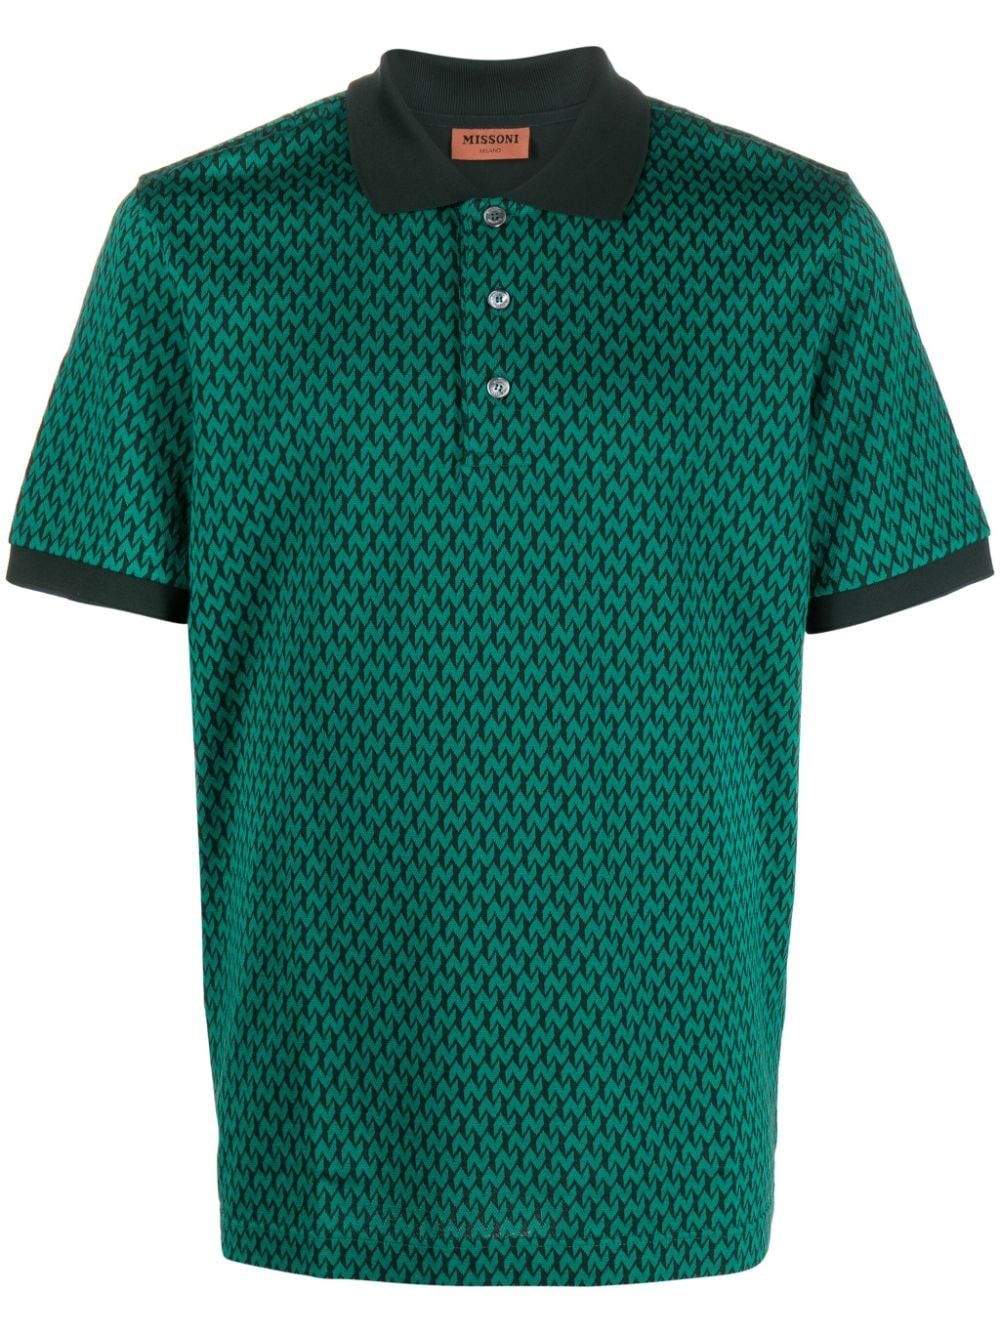 monogram-pattern cotton polo shirt - 1